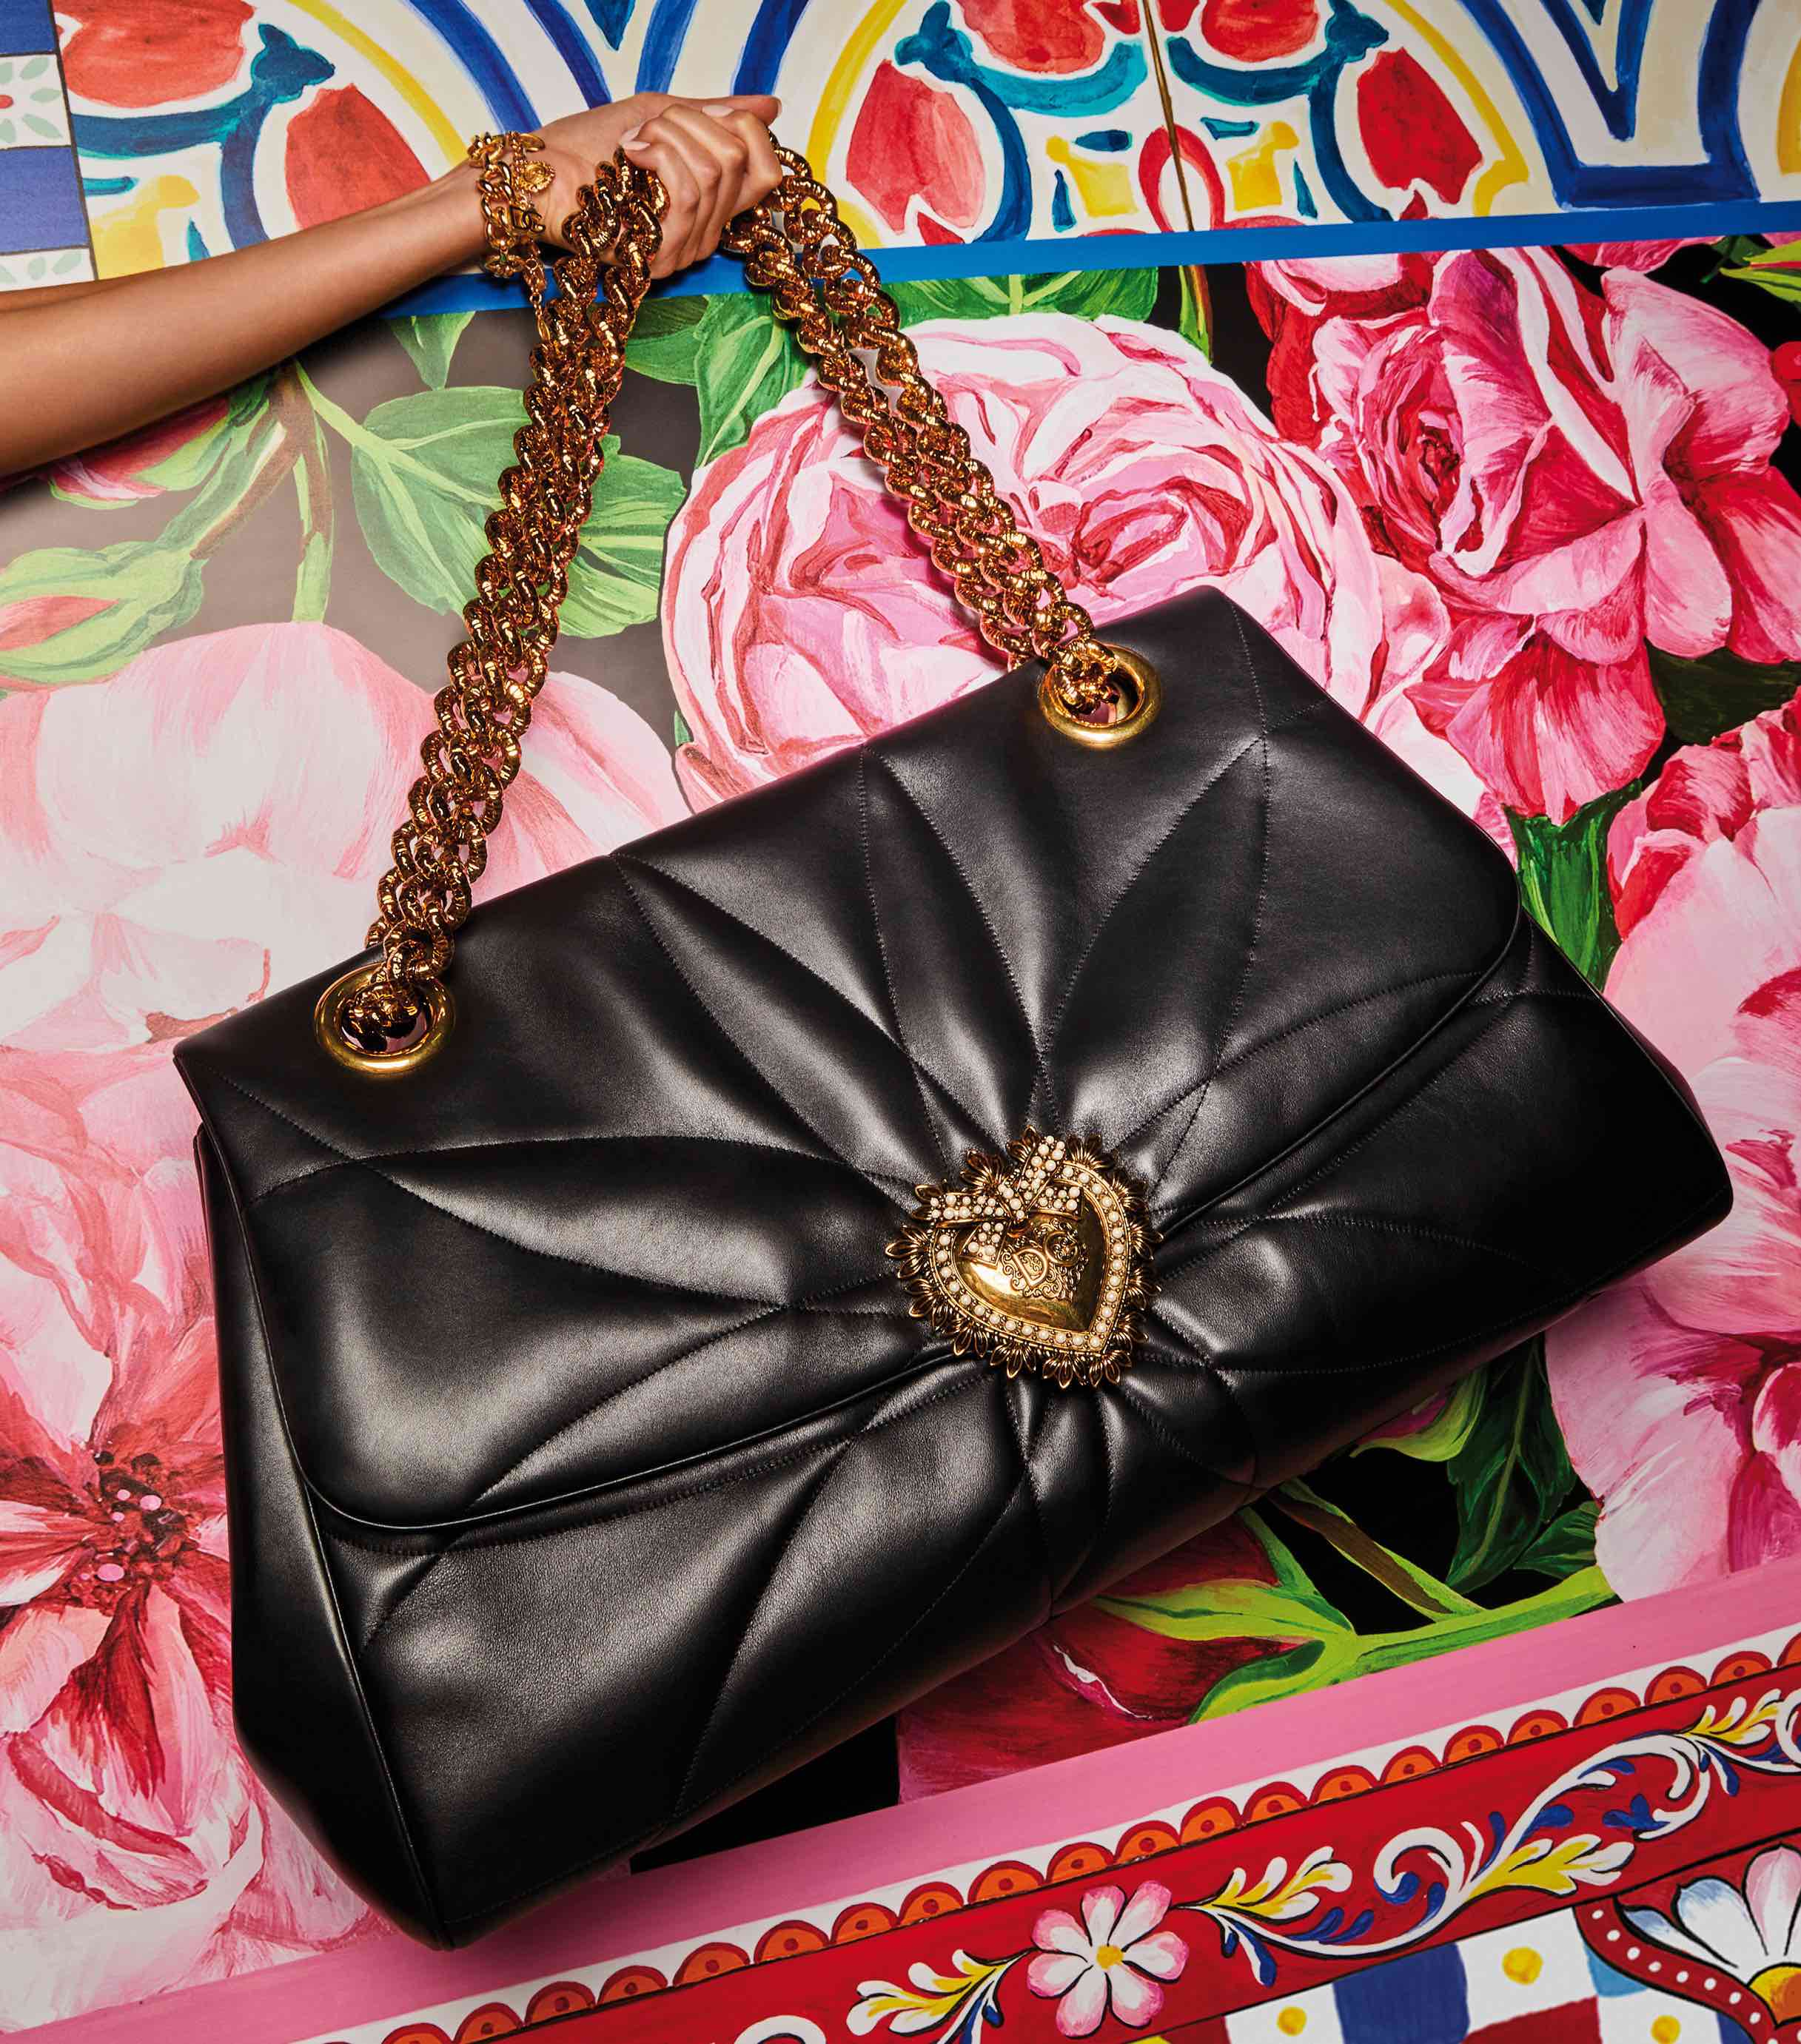 Dolce&Gabbana se une a El Palacio de Hierro como parte de su e-commerce